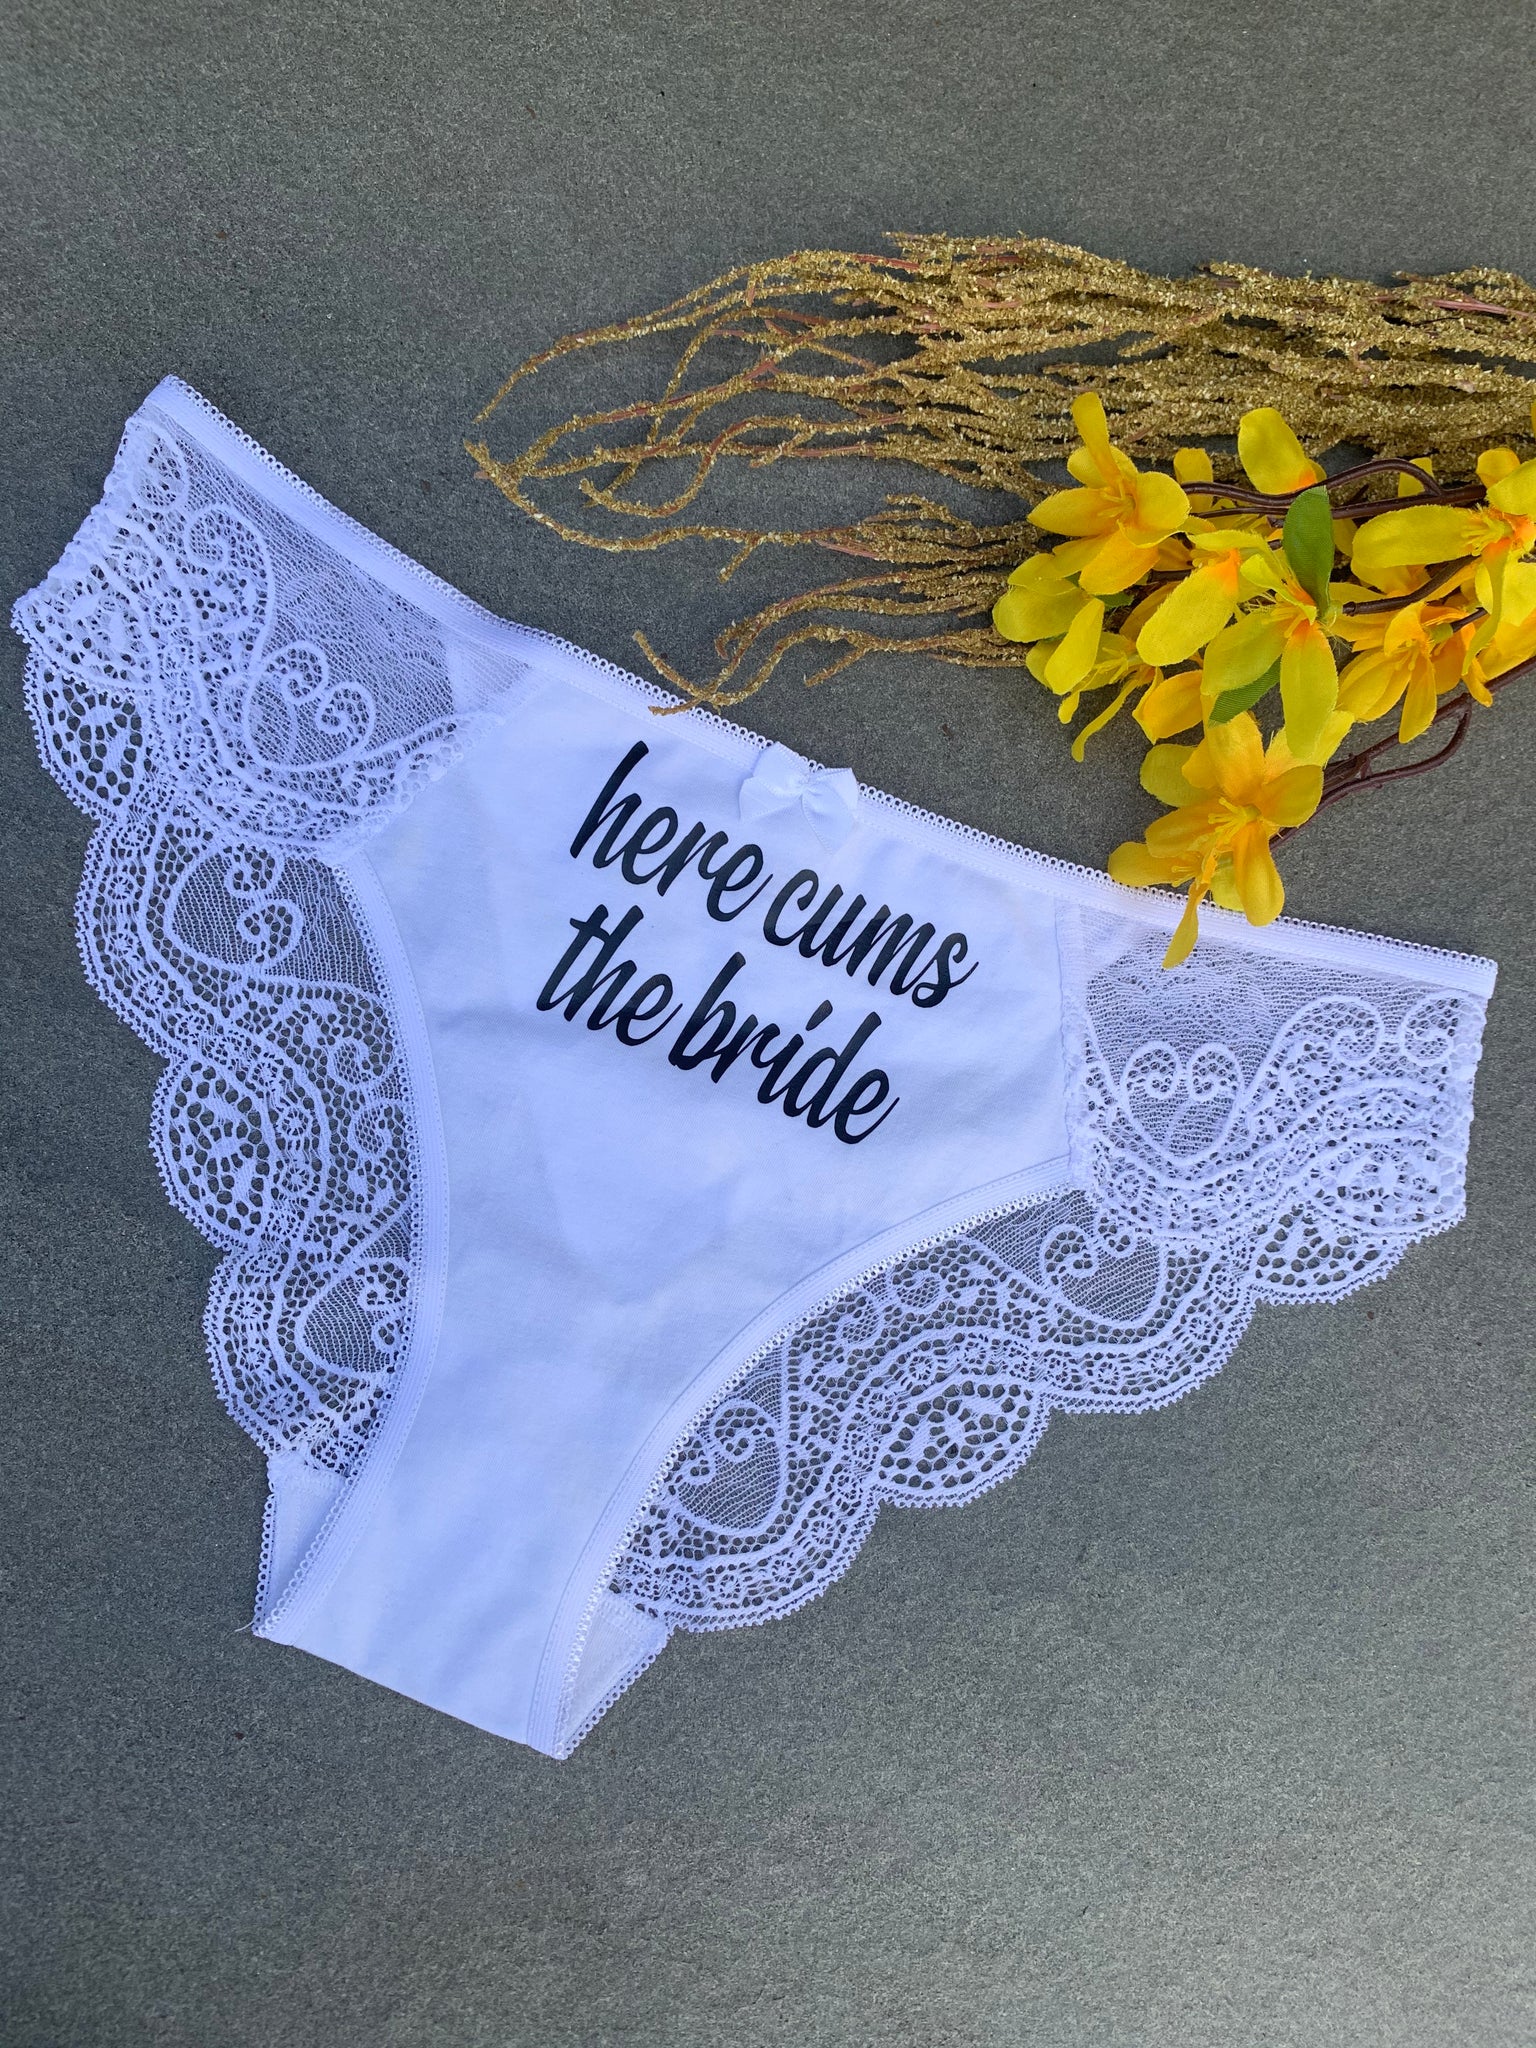 Personalized Underwear - Funny Underwear - Bridal Shower Gift